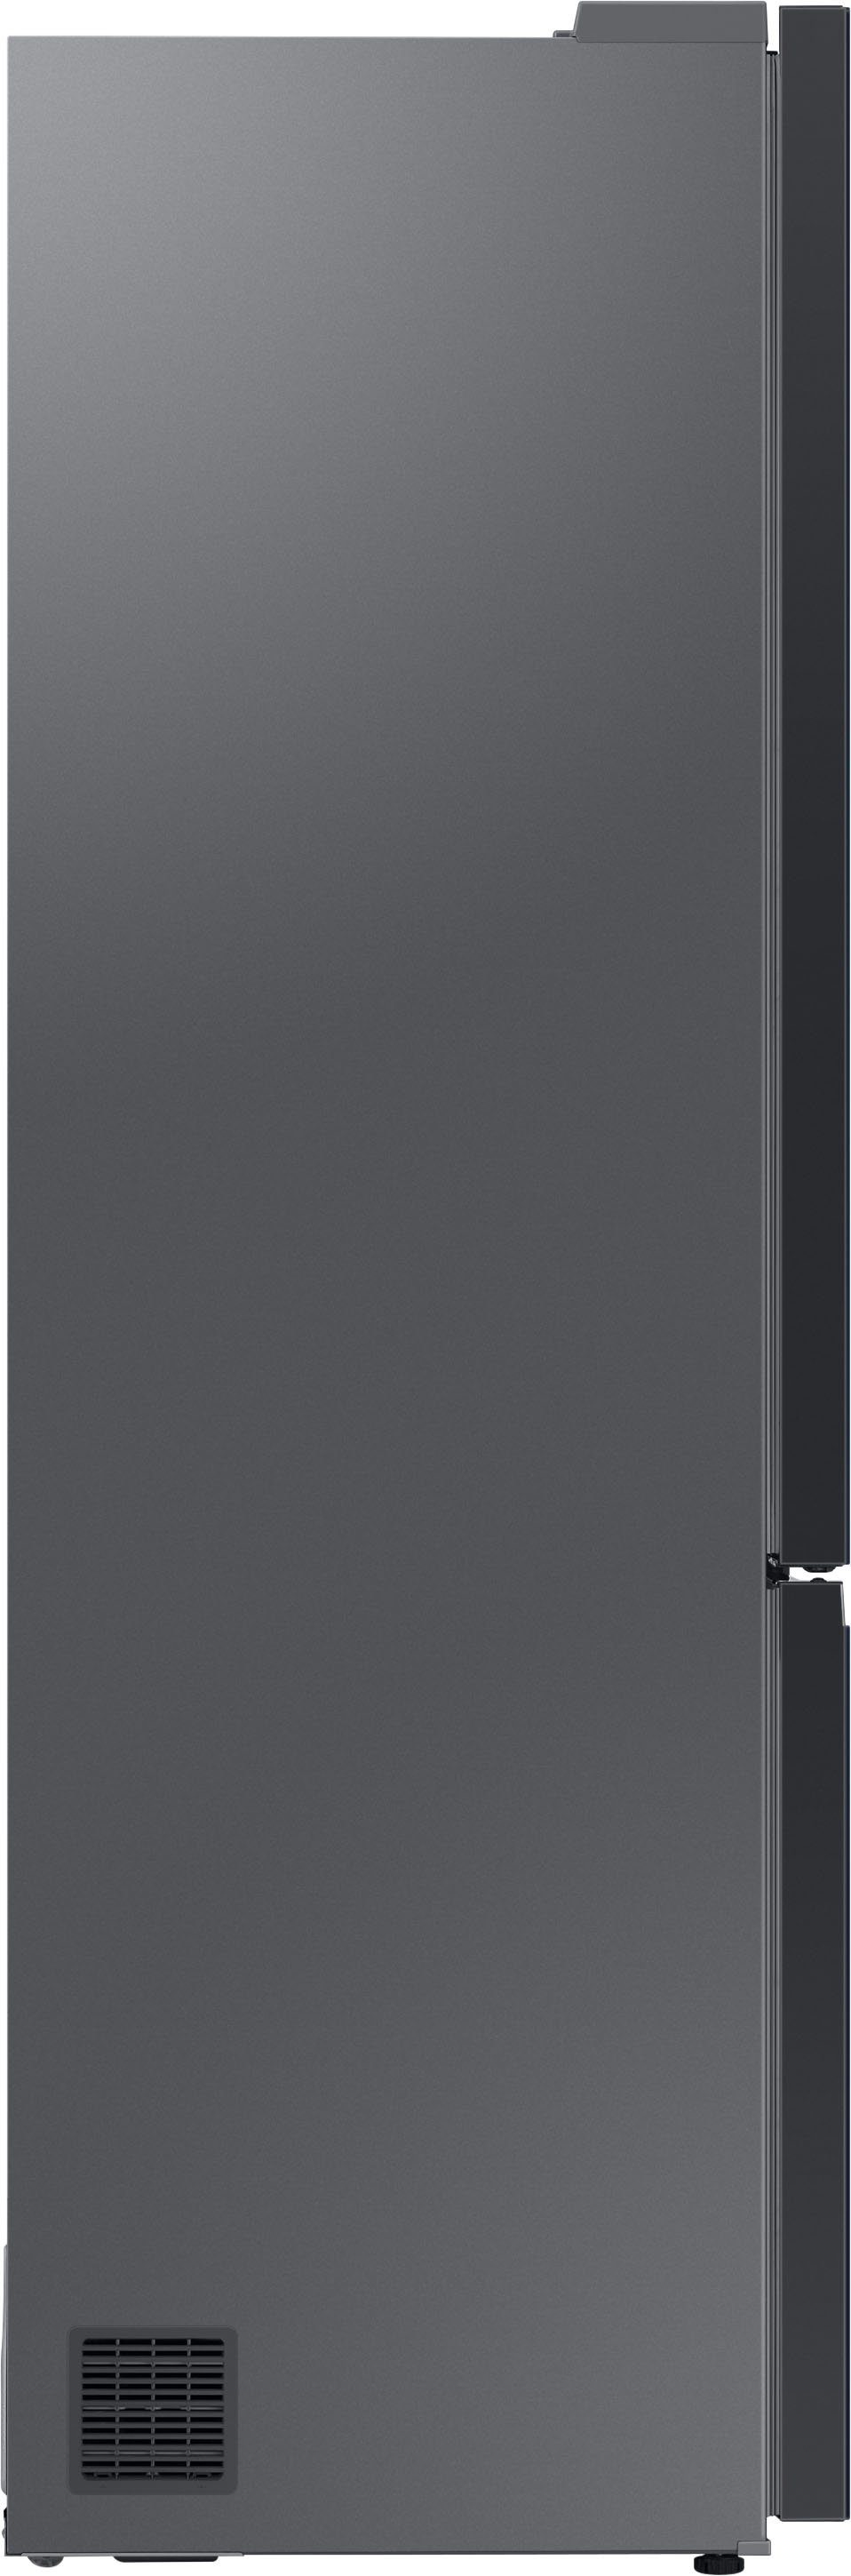 Samsung Kühl-/Gefrierkombination Bespoke RL38A6B6C41, 203 cm 59,5 cm breit hoch